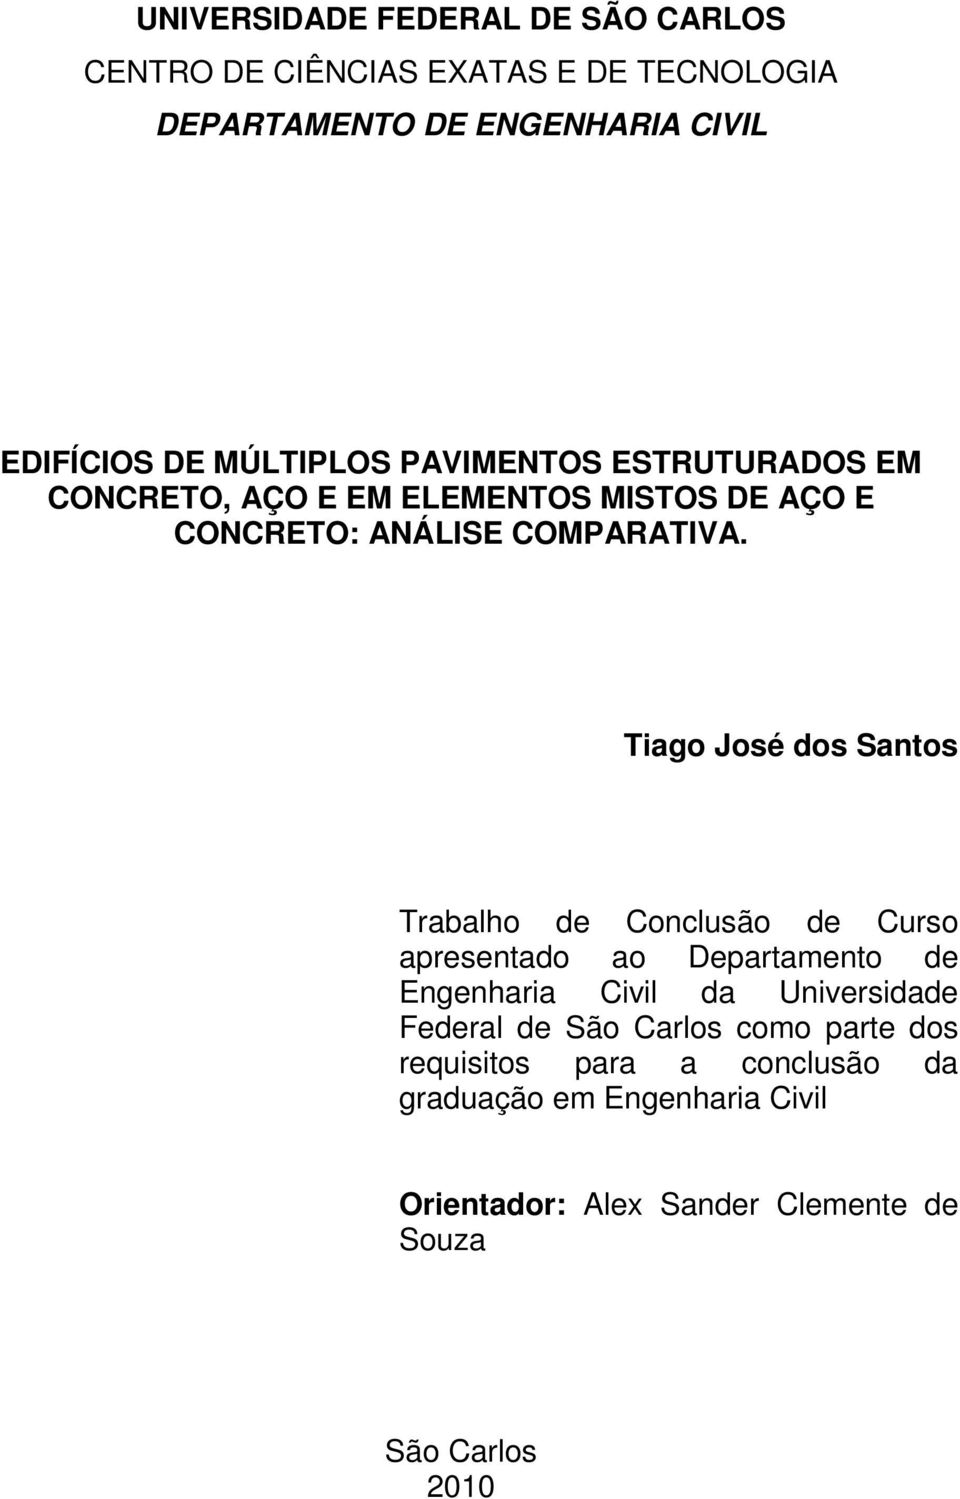 Tiago José dos Santos Trabalho de Conclusão de Curso apresentado ao Departamento de Engenharia Civil da Universidade Federal